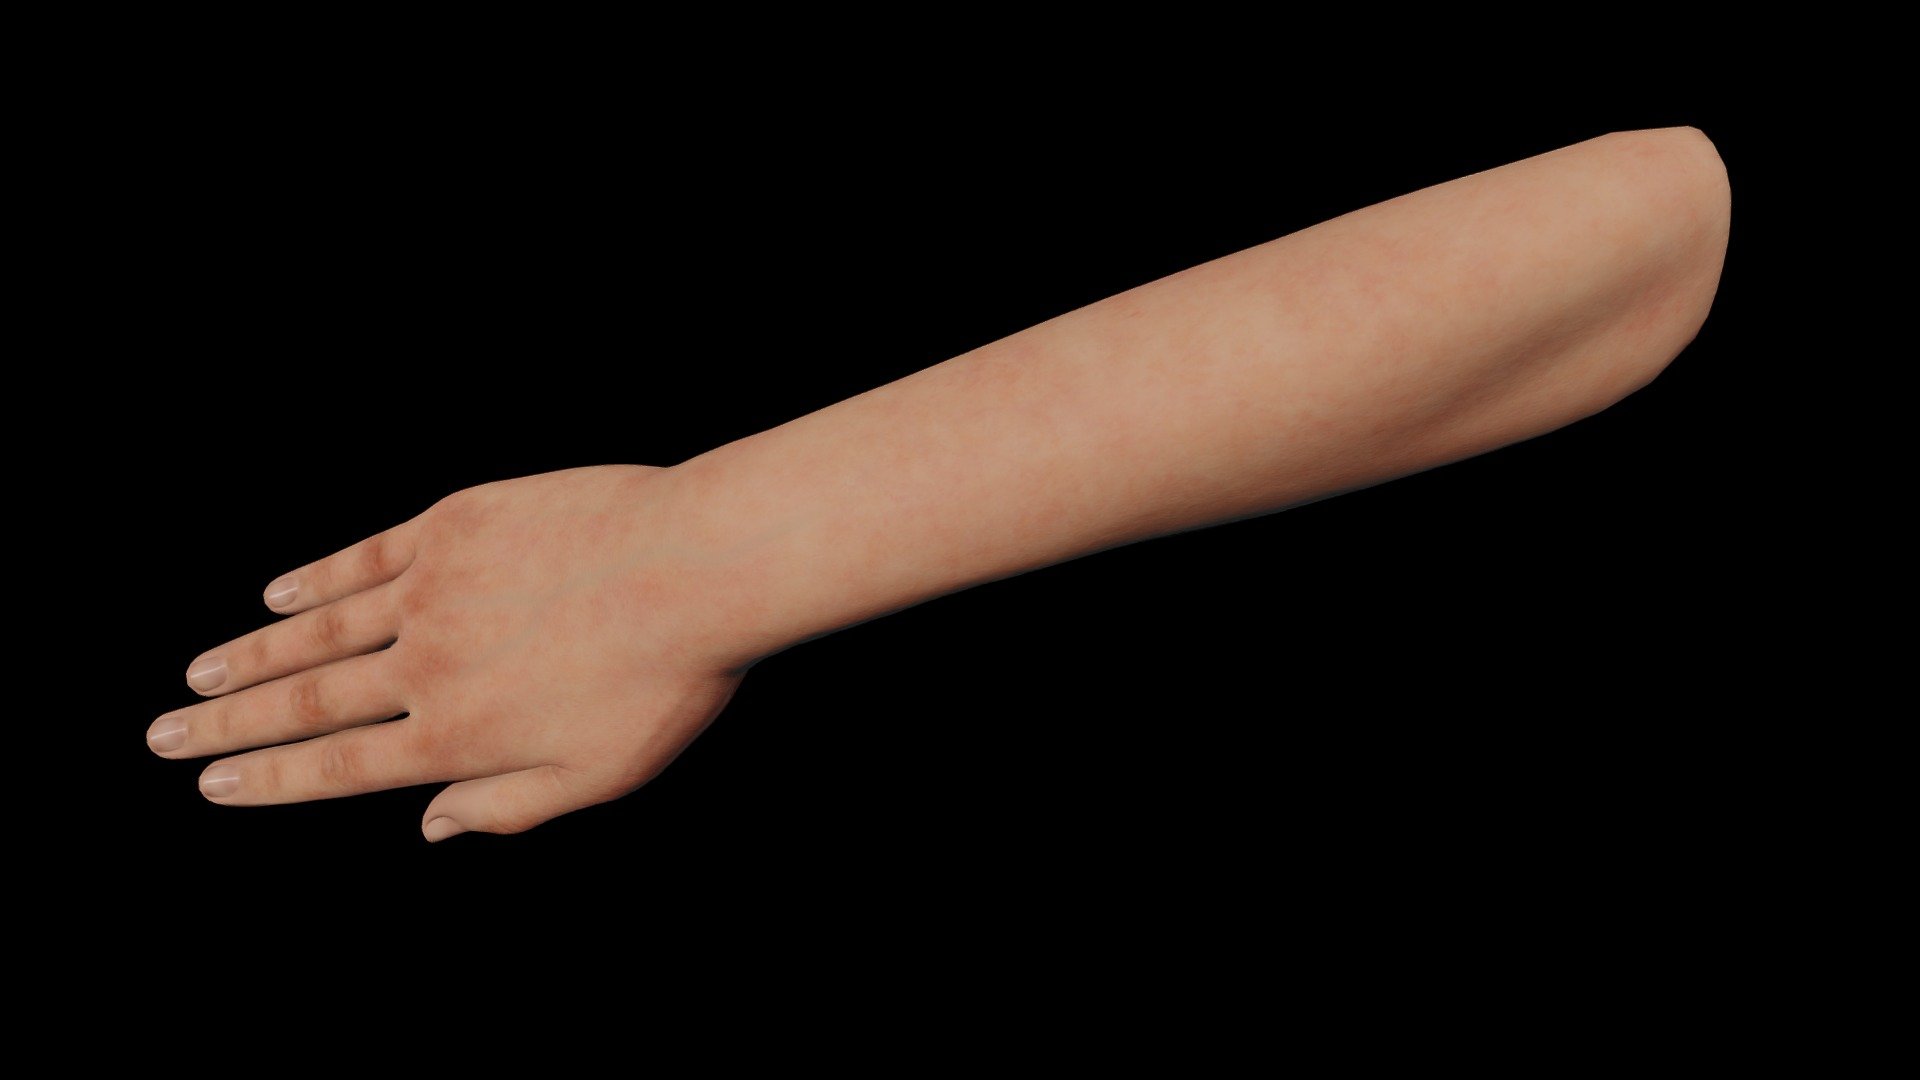 Human right hand 3D model made in Blender 3.2 3d model